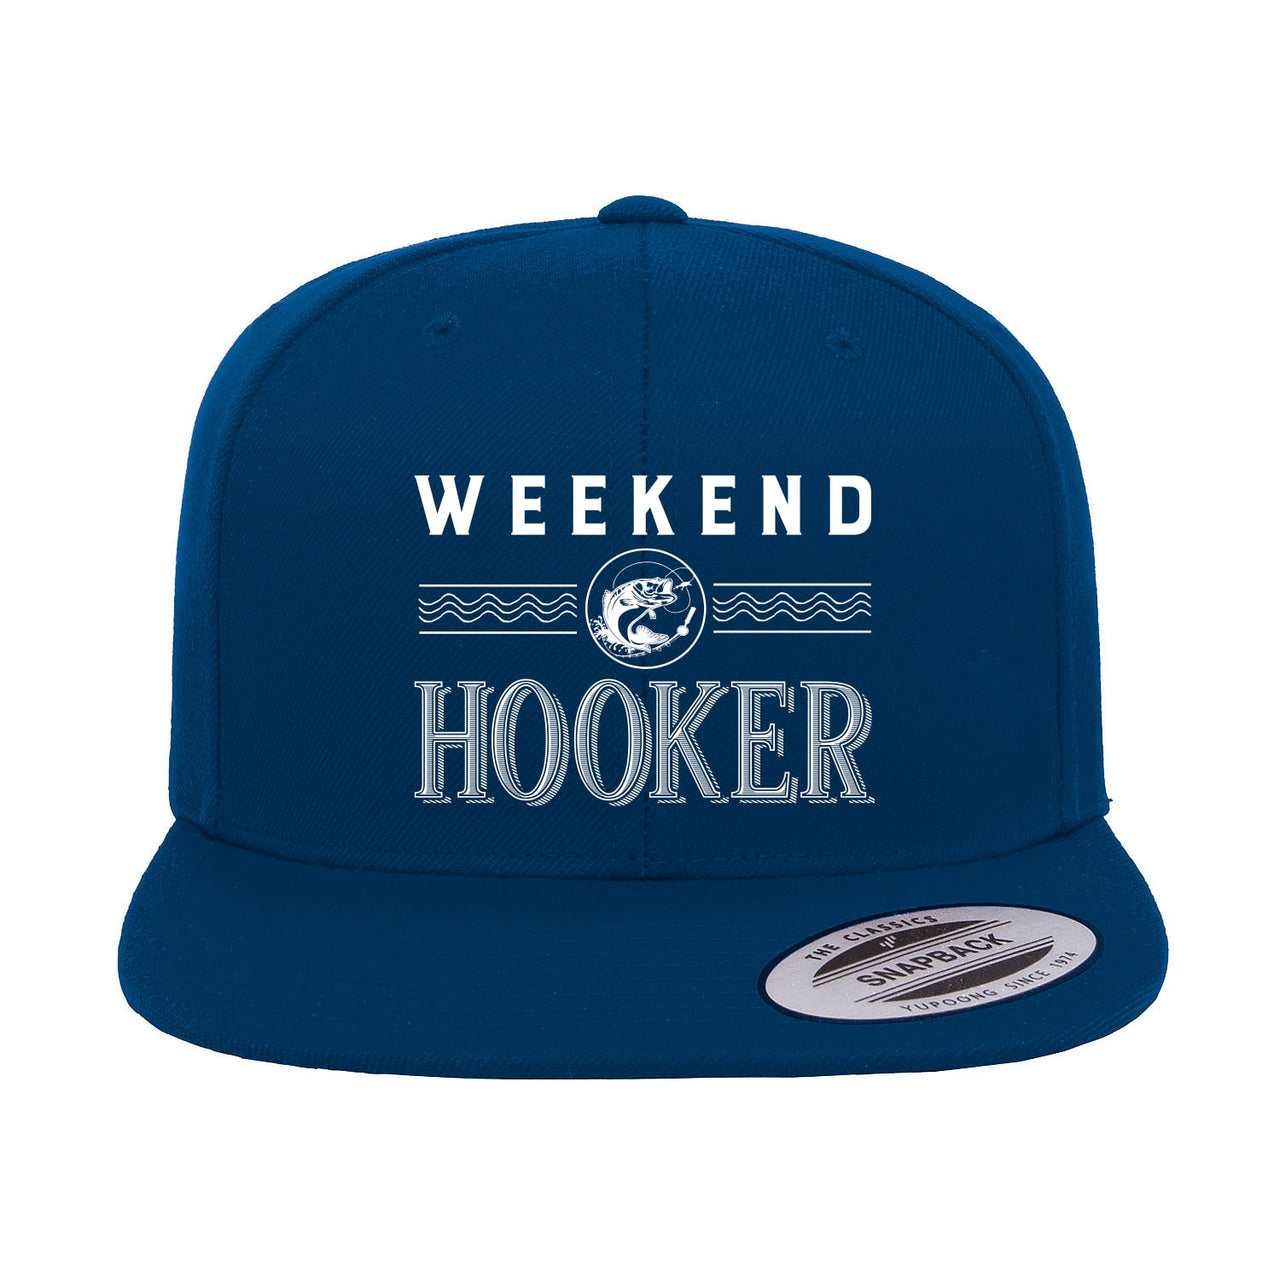 Weekend Hooker Embroidered Flat Bill Cap